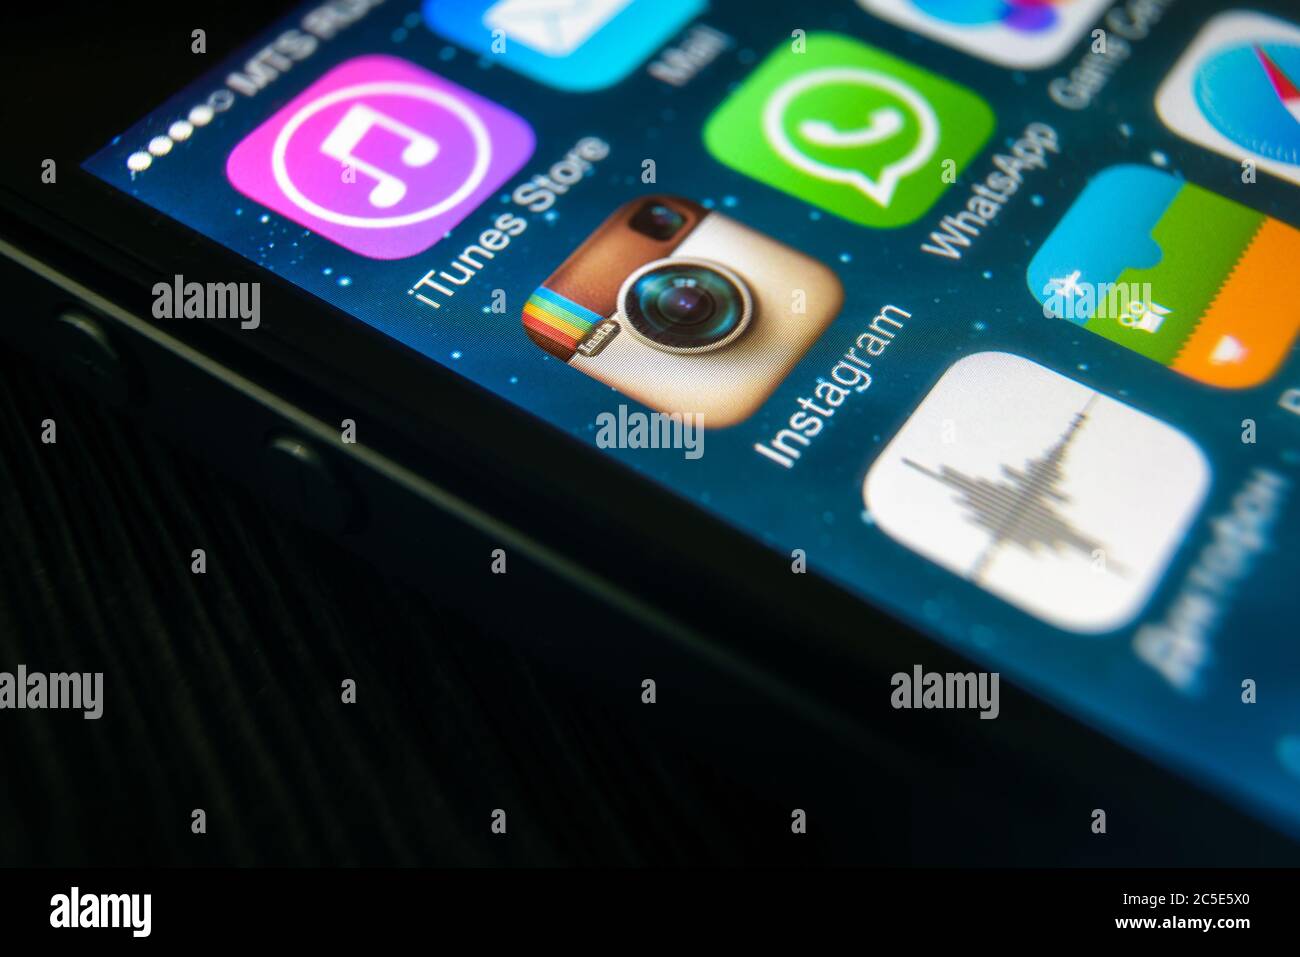 Mosca - 11 marzo 2019: Primo piano del logo Instagram sullo schermo  dell'iPhone. Icona dell'applicazione dei social media Instagram sullo  smartphone, visualizzazione macro. Instagram e Foto stock - Alamy